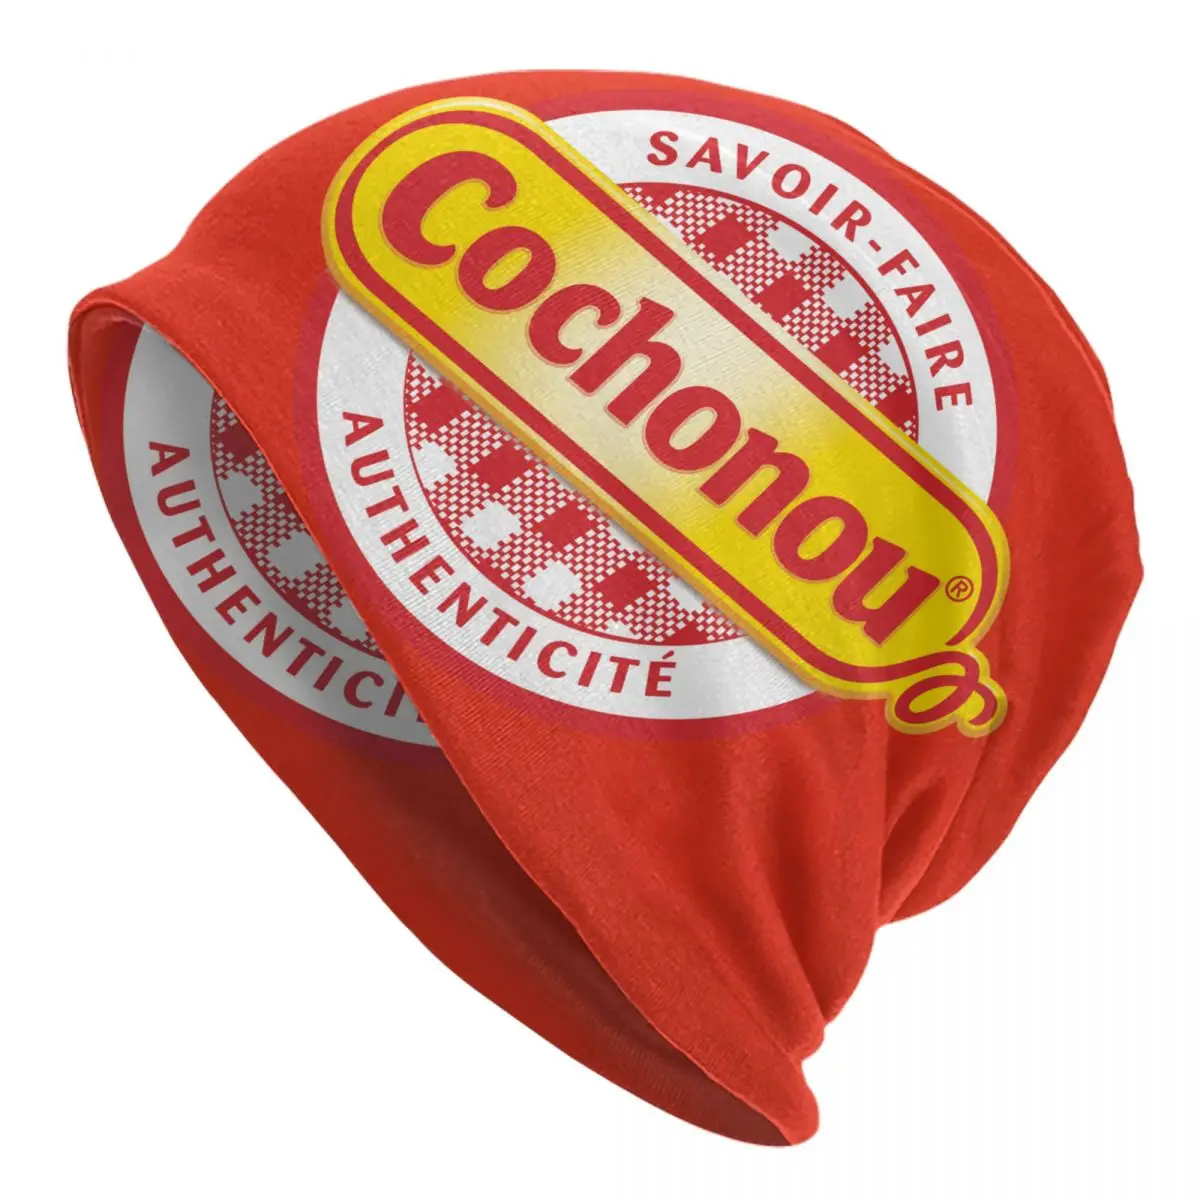 

Pig Cochonou Skullies Beanies Caps Men Women Unisex Trend Winter Warm Knit Hat Adult Bonnet Hats